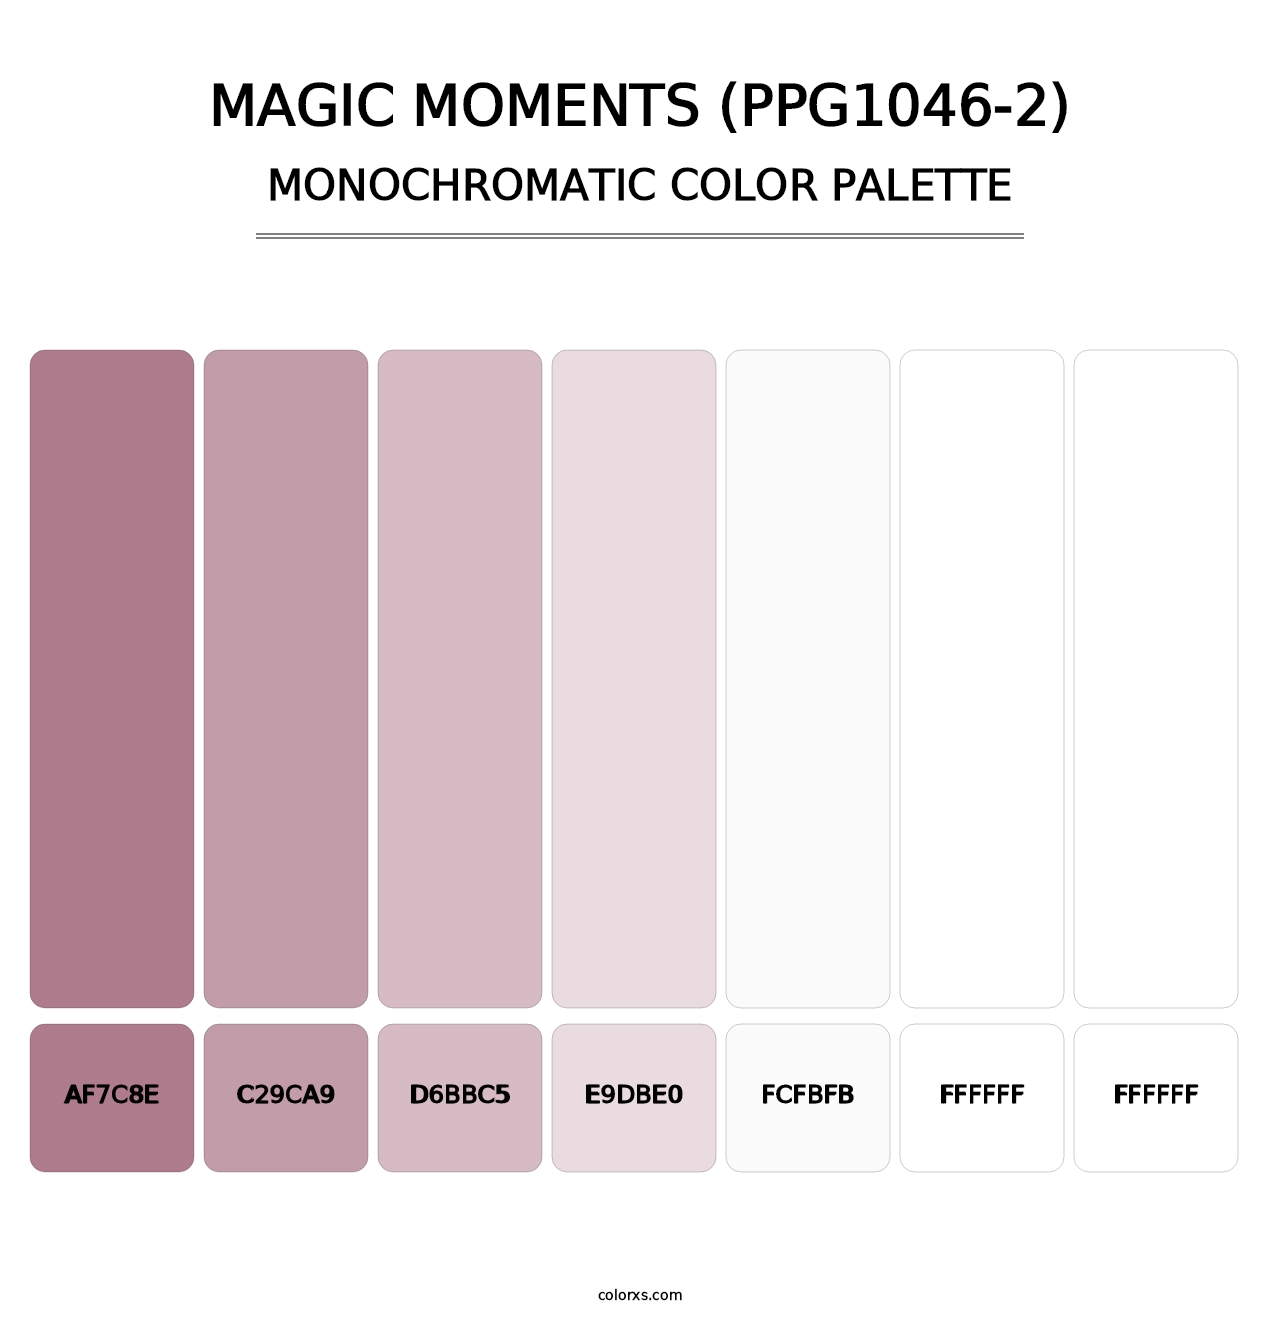 Magic Moments (PPG1046-2) - Monochromatic Color Palette